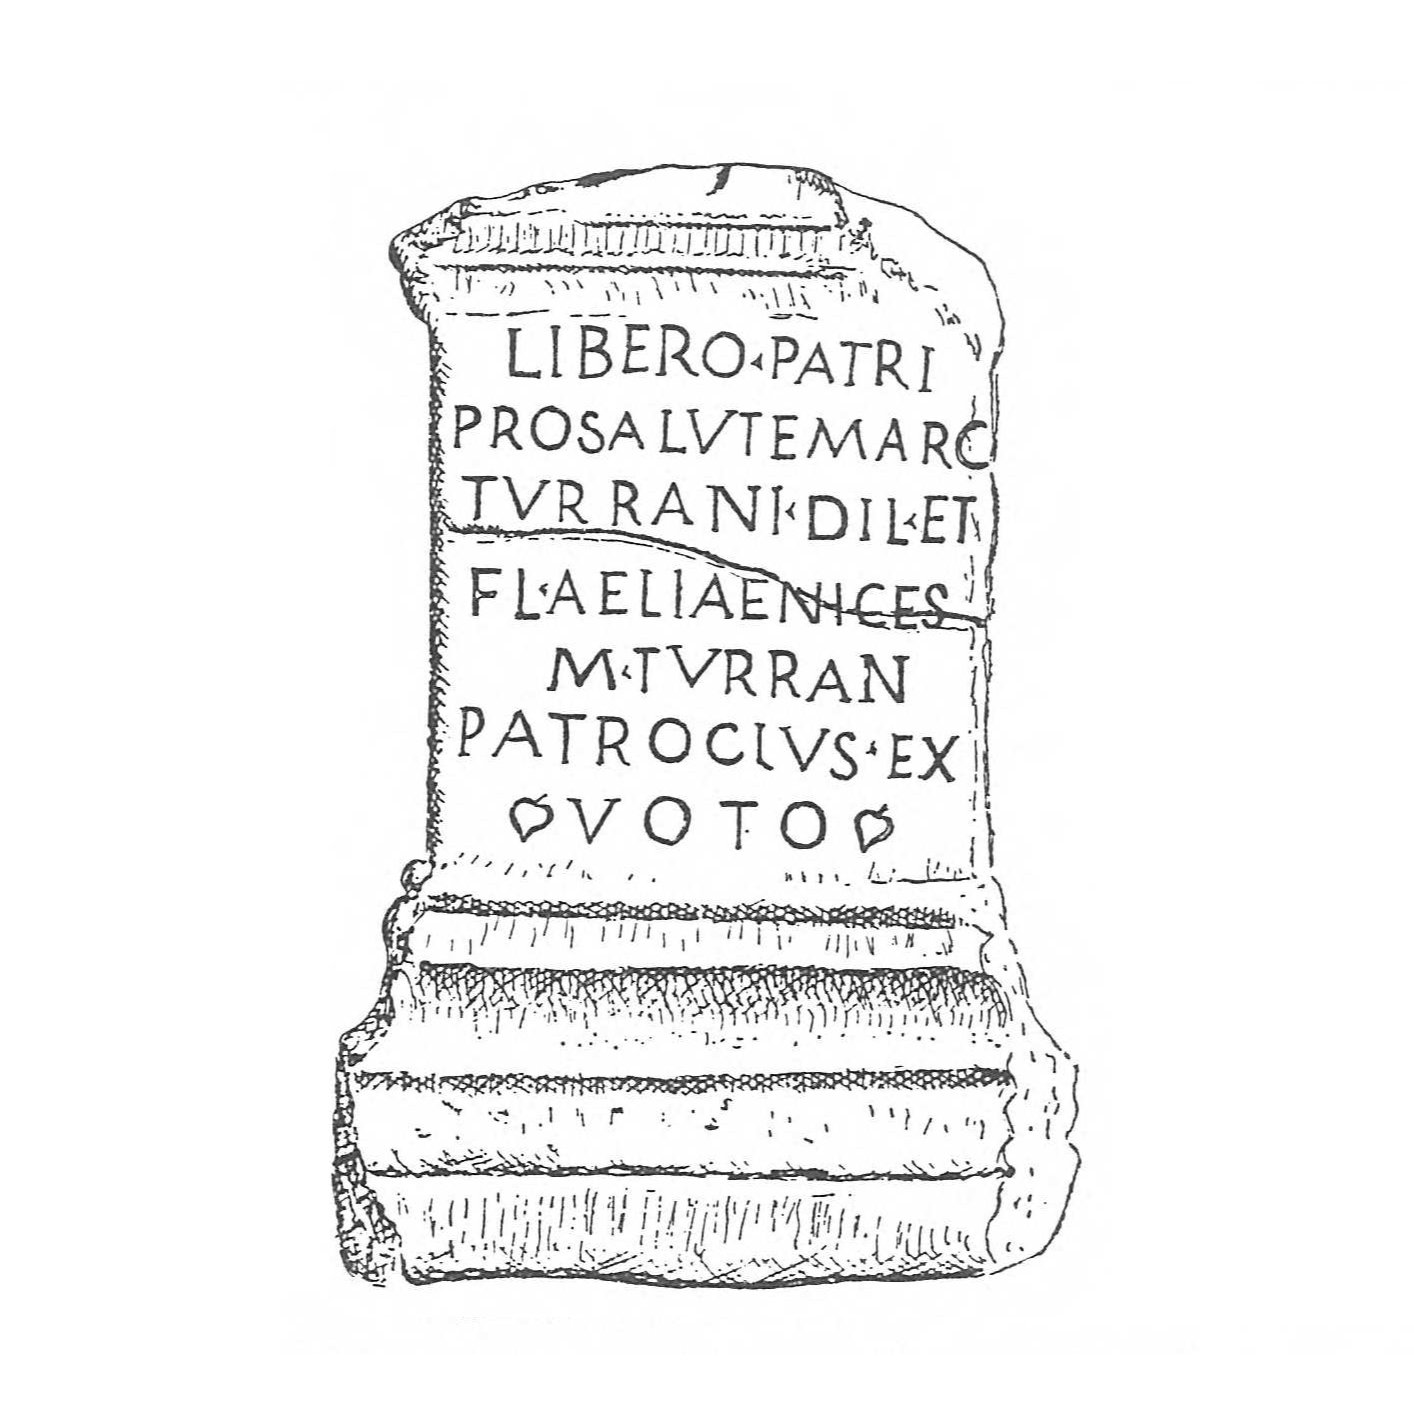 Altar from Tibiscum